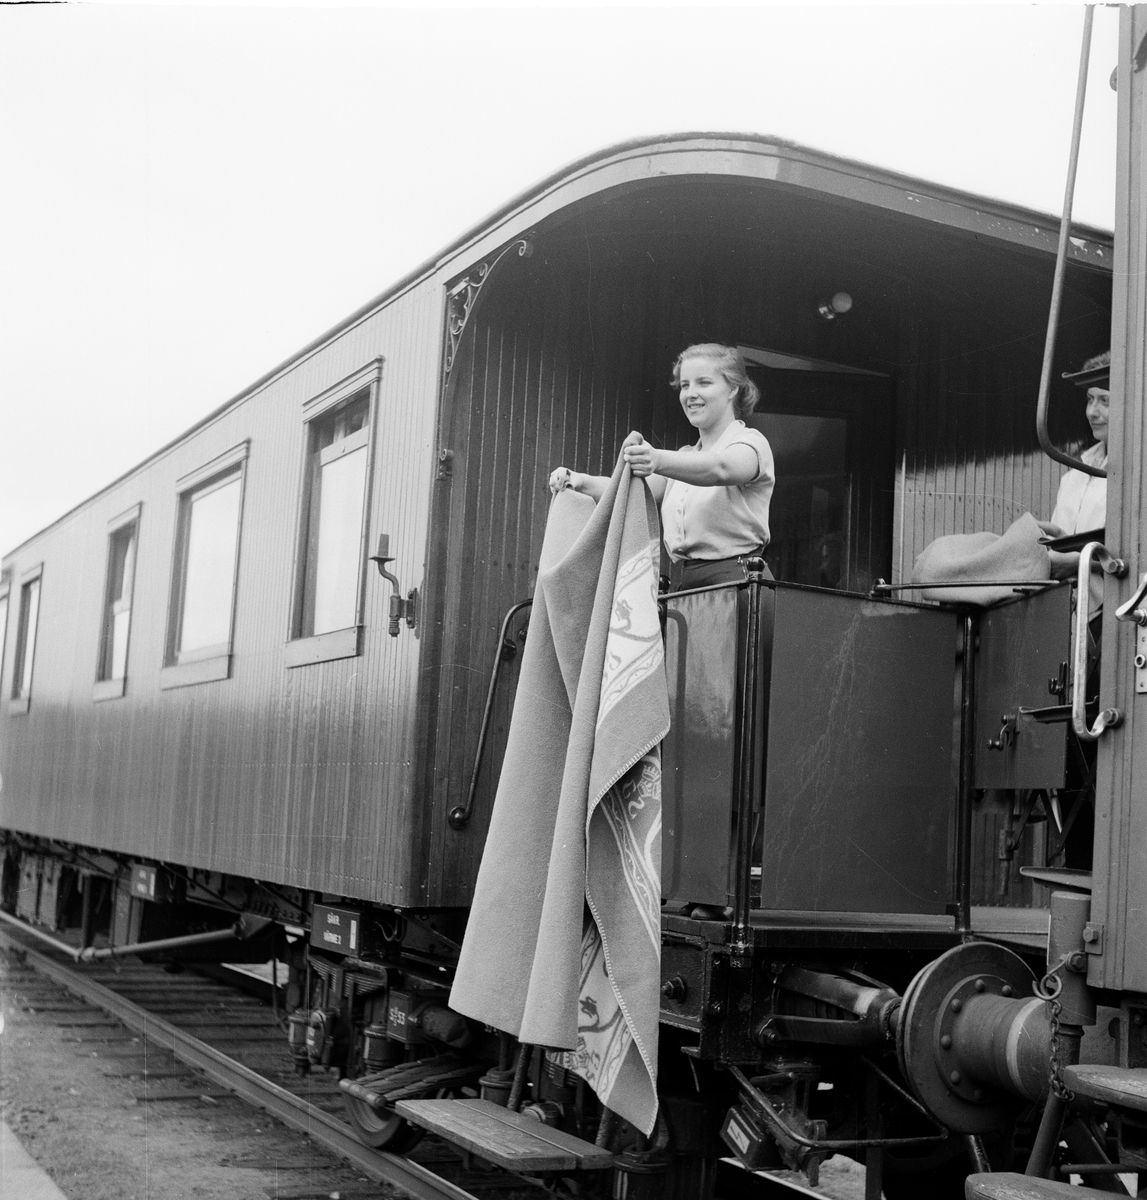 Statens Järnvägar, SJ tåghem under uppehåll i Rättvik.
Vagnen är sällskapsvagn Co7 3066 vilken blev ombyggd till detta 1953. Innanför dörren finns en dansavdelning och i andra änden sällskapsavdelning med 66 sittplatser.
TT